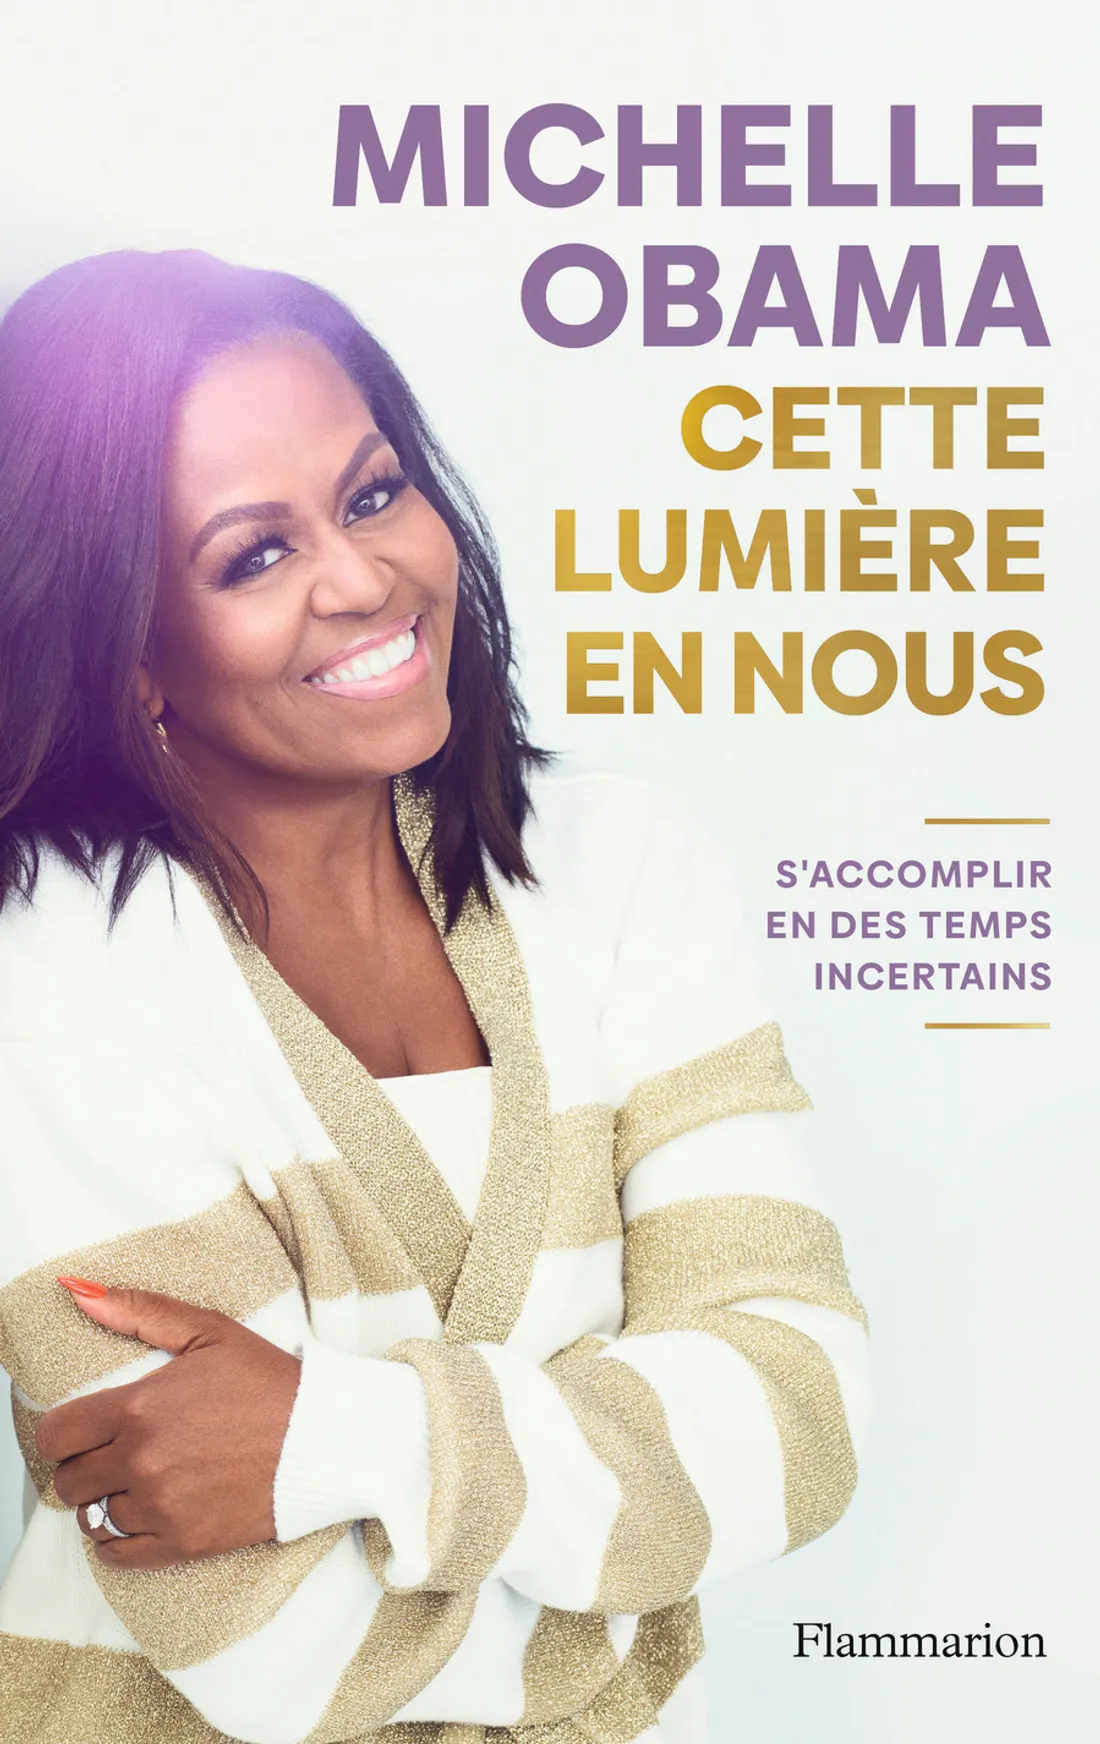 Michelle Obama et son nouveau livre 